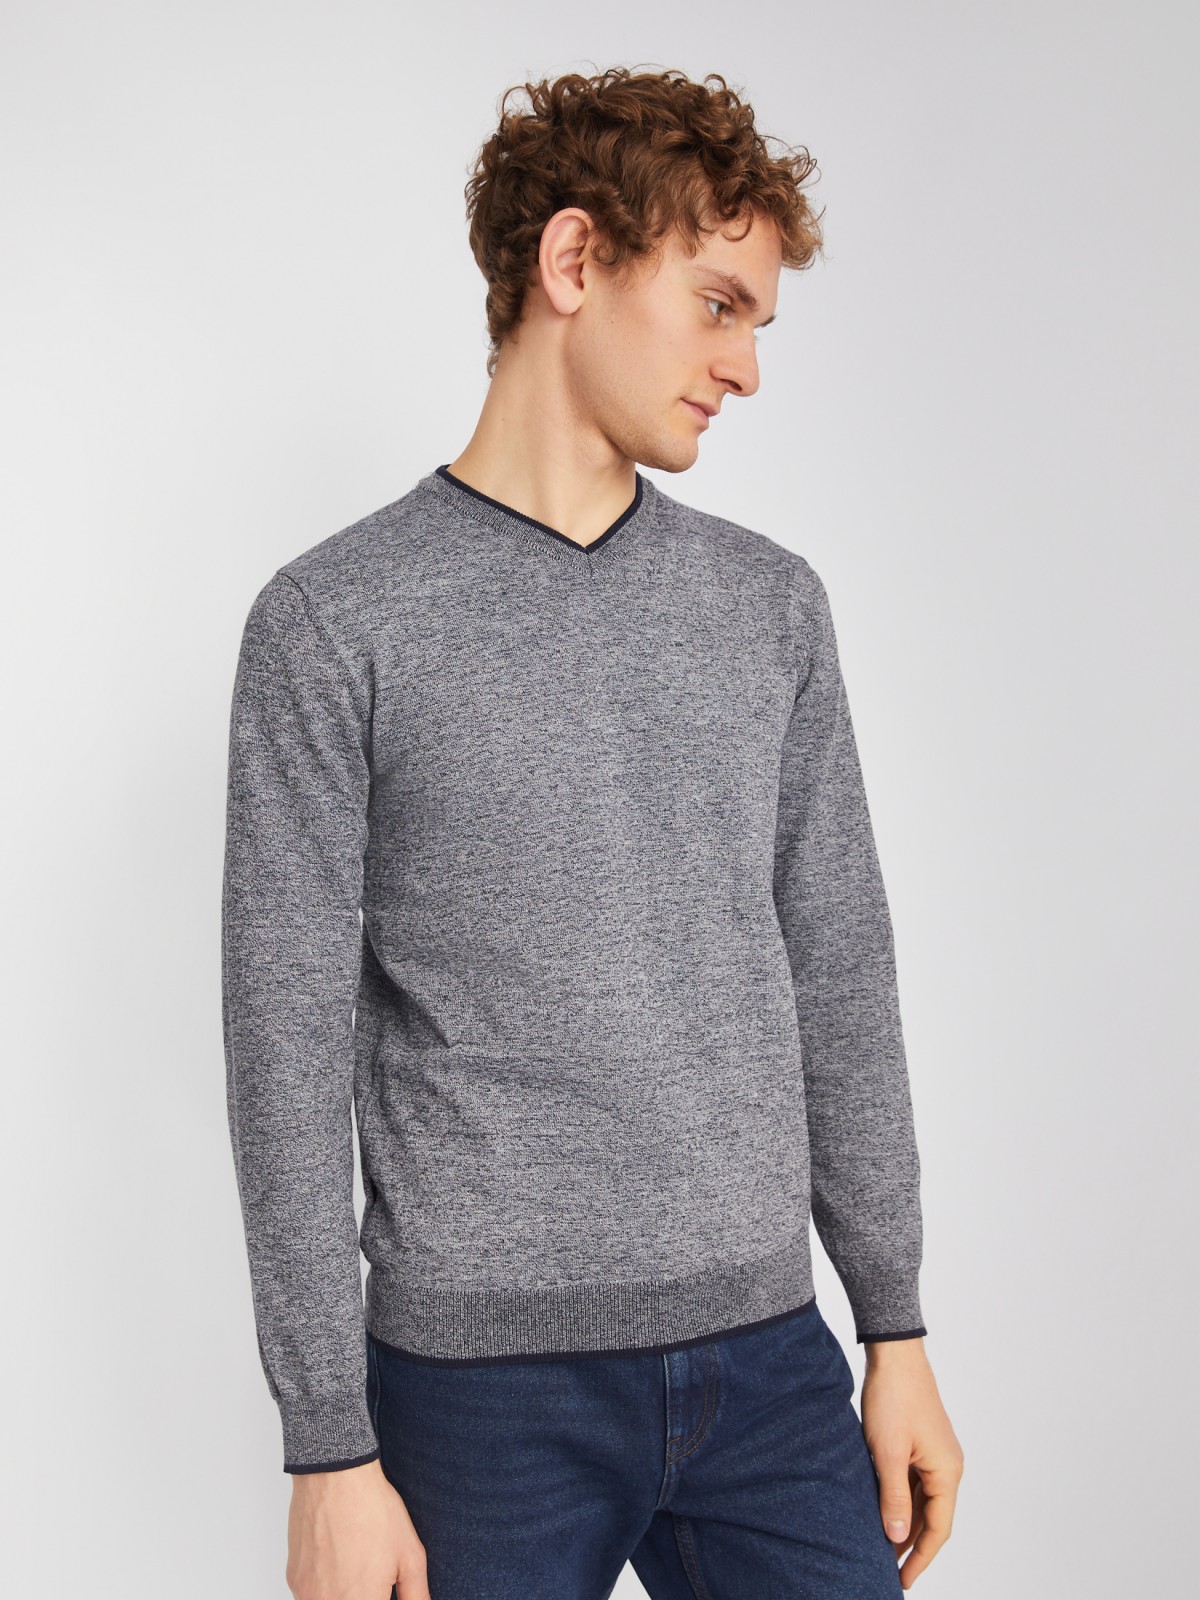 Тонкий трикотажный пуловер с длинным рукавом zolla 014116101082, цвет темно-серый, размер M - фото 5